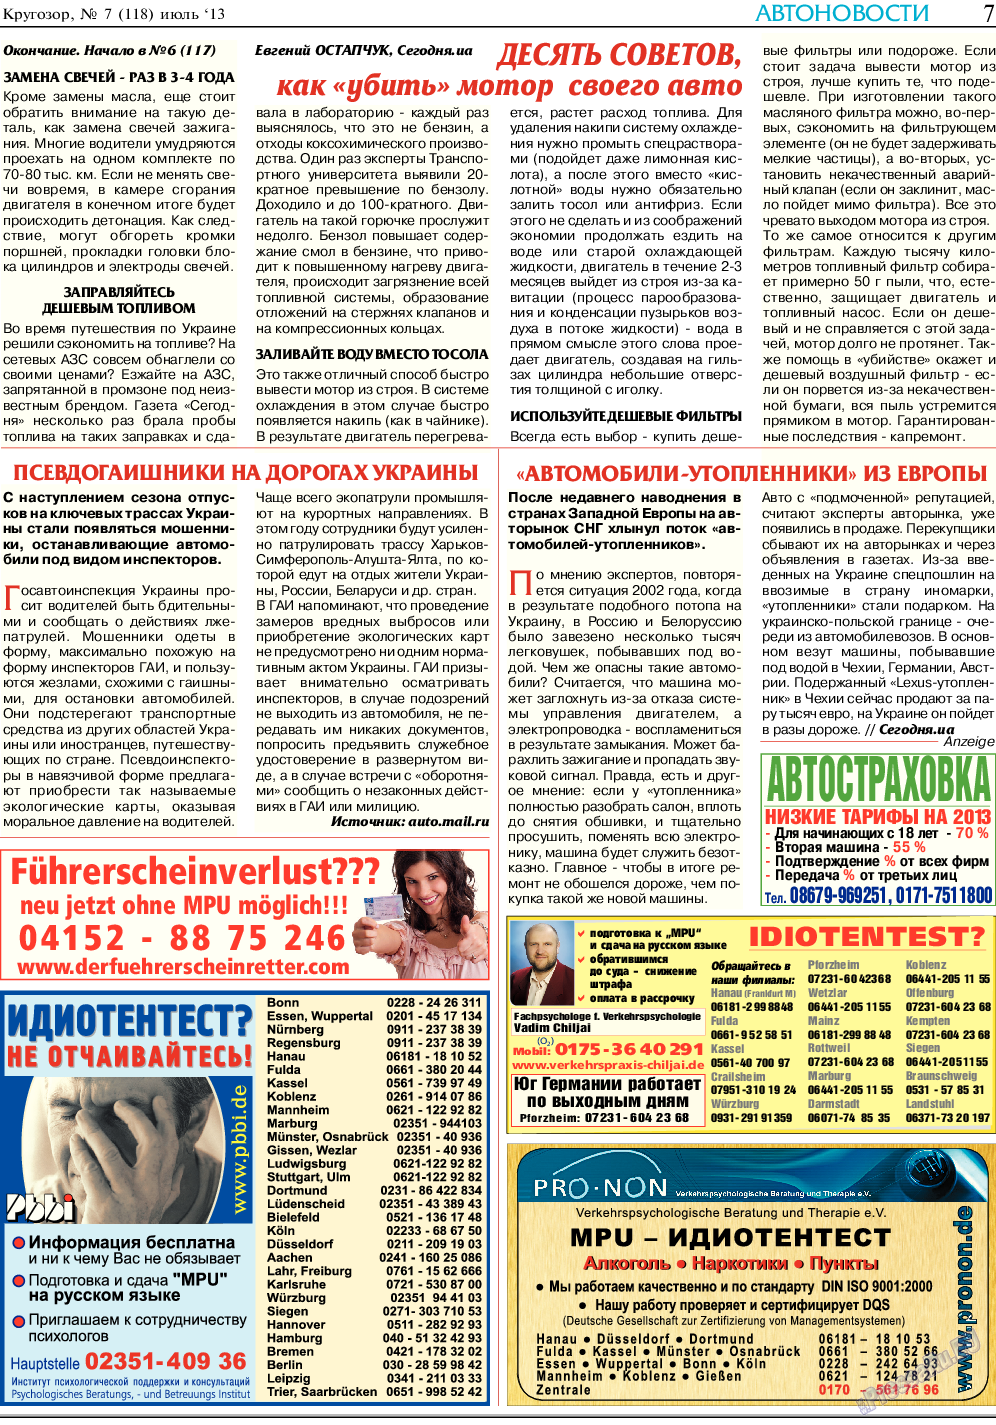 Кругозор, газета. 2013 №7 стр.7